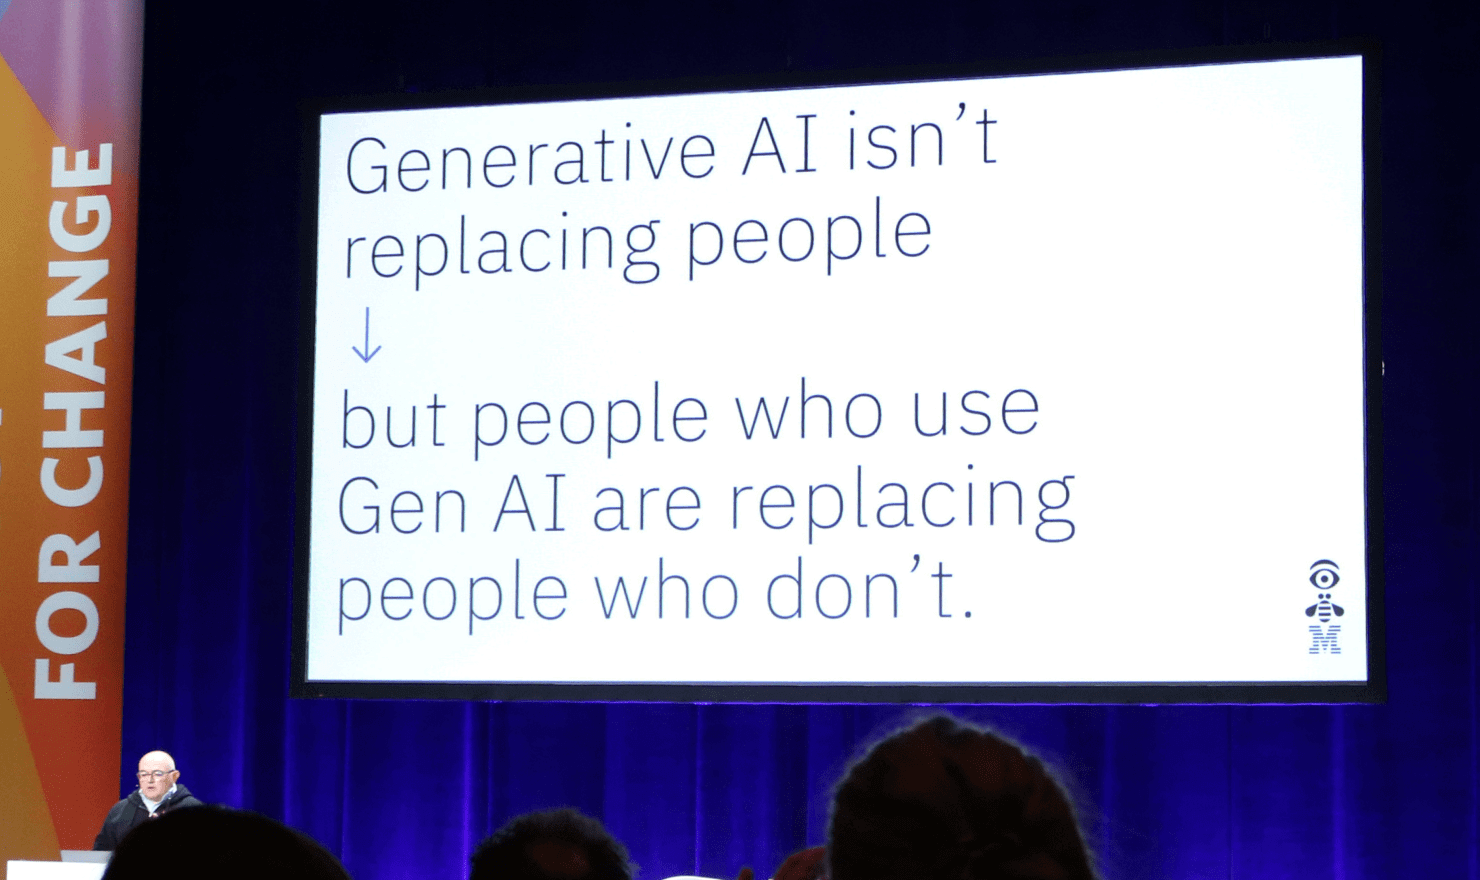 画像：Billy Seabrook 氏のトーク中のスライド “Generative AI isn’t replacing people but people who use Gen AI are replacing people who don’t.”